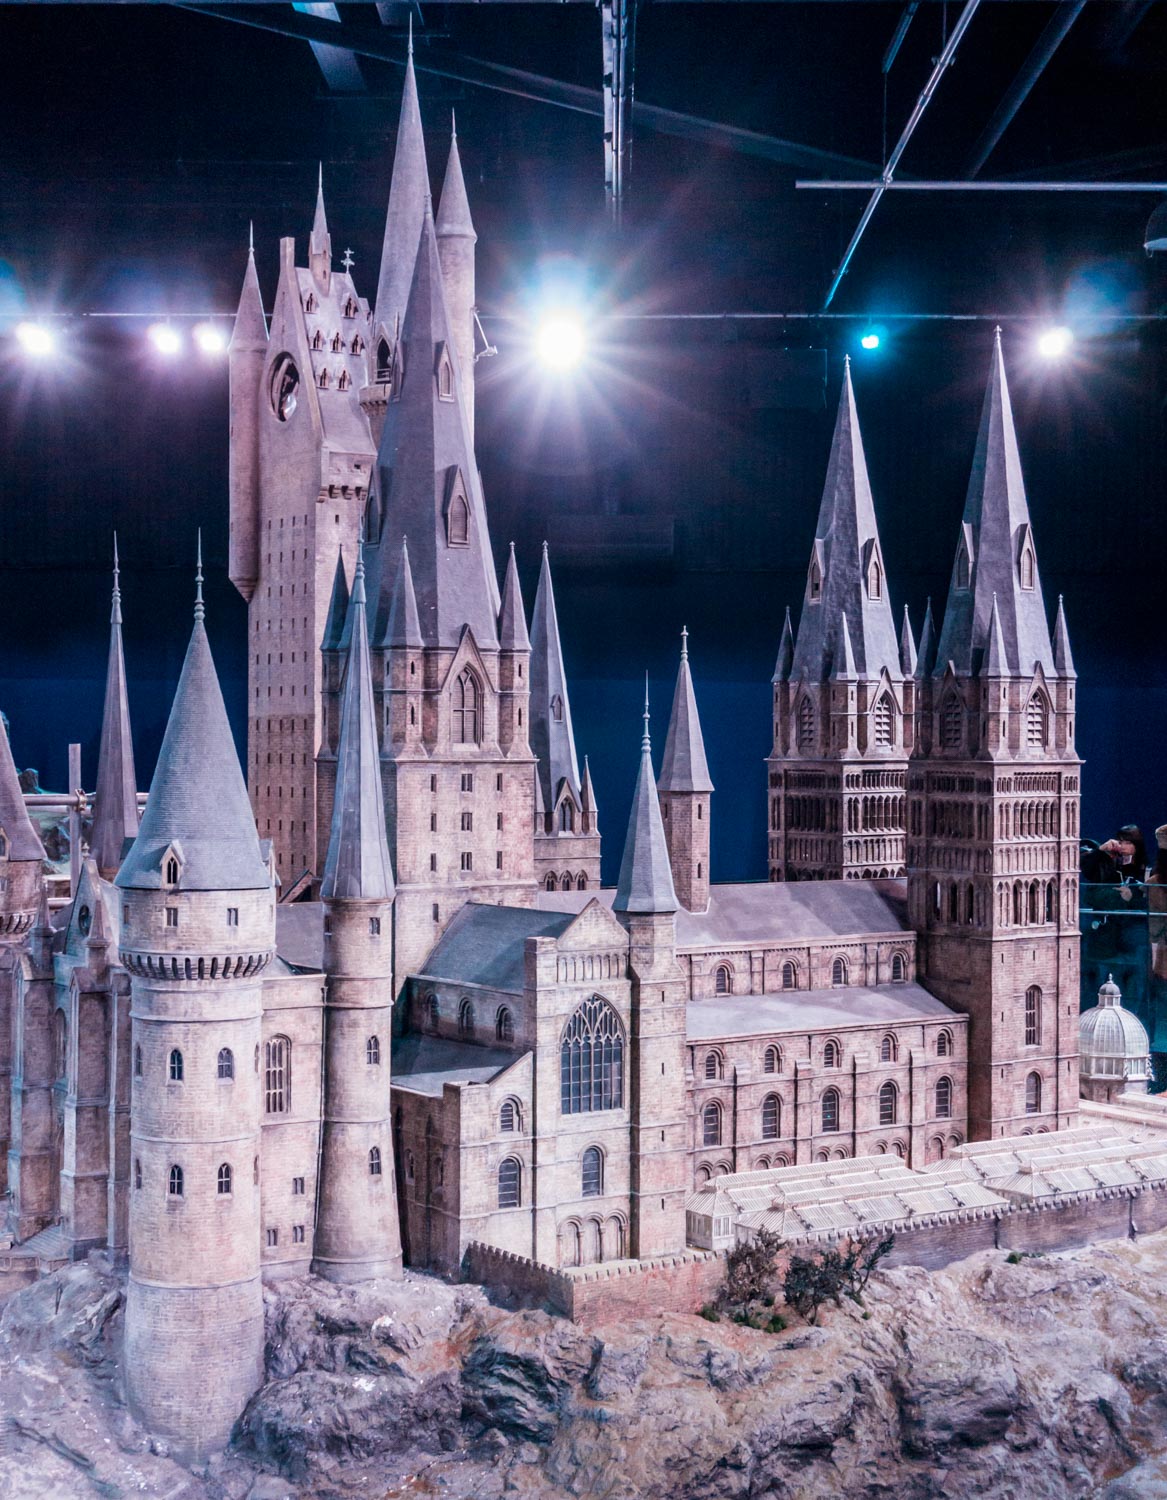 Harry Potter Studio Tour – part 2